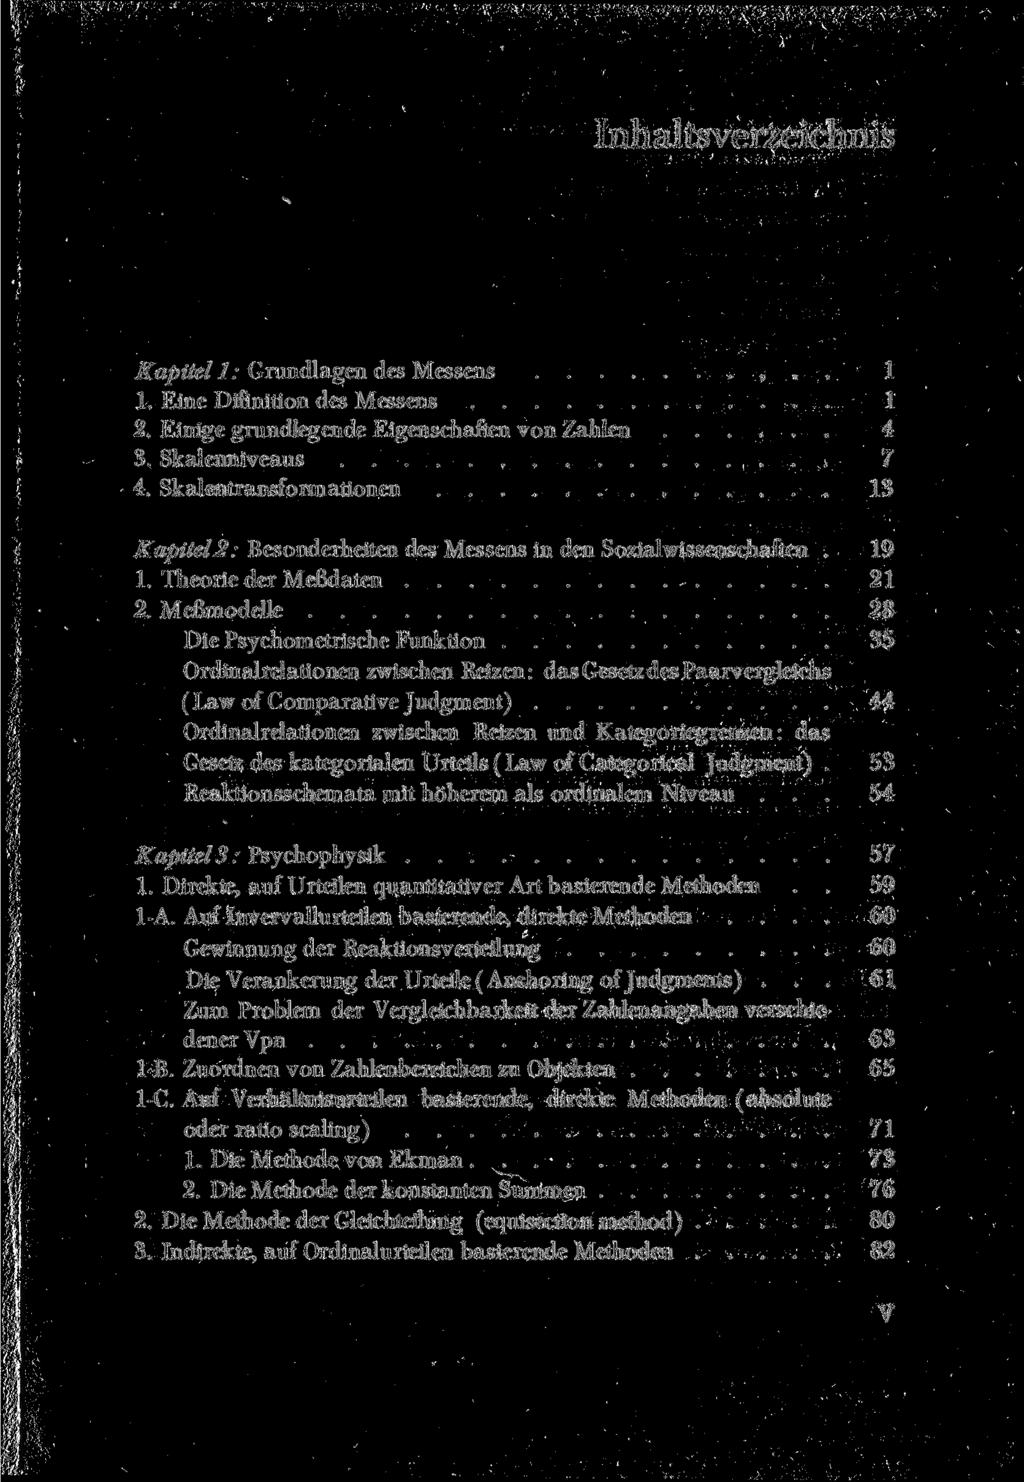 Inhaltsverzeichnis Kapitell: Grundlagen des Messens,.. 1 1. Eine Difinition des Messens 1 2. Einige grundlegende Eigenschaften von Zahlen 4 3. Skalenniveaus 7 4.